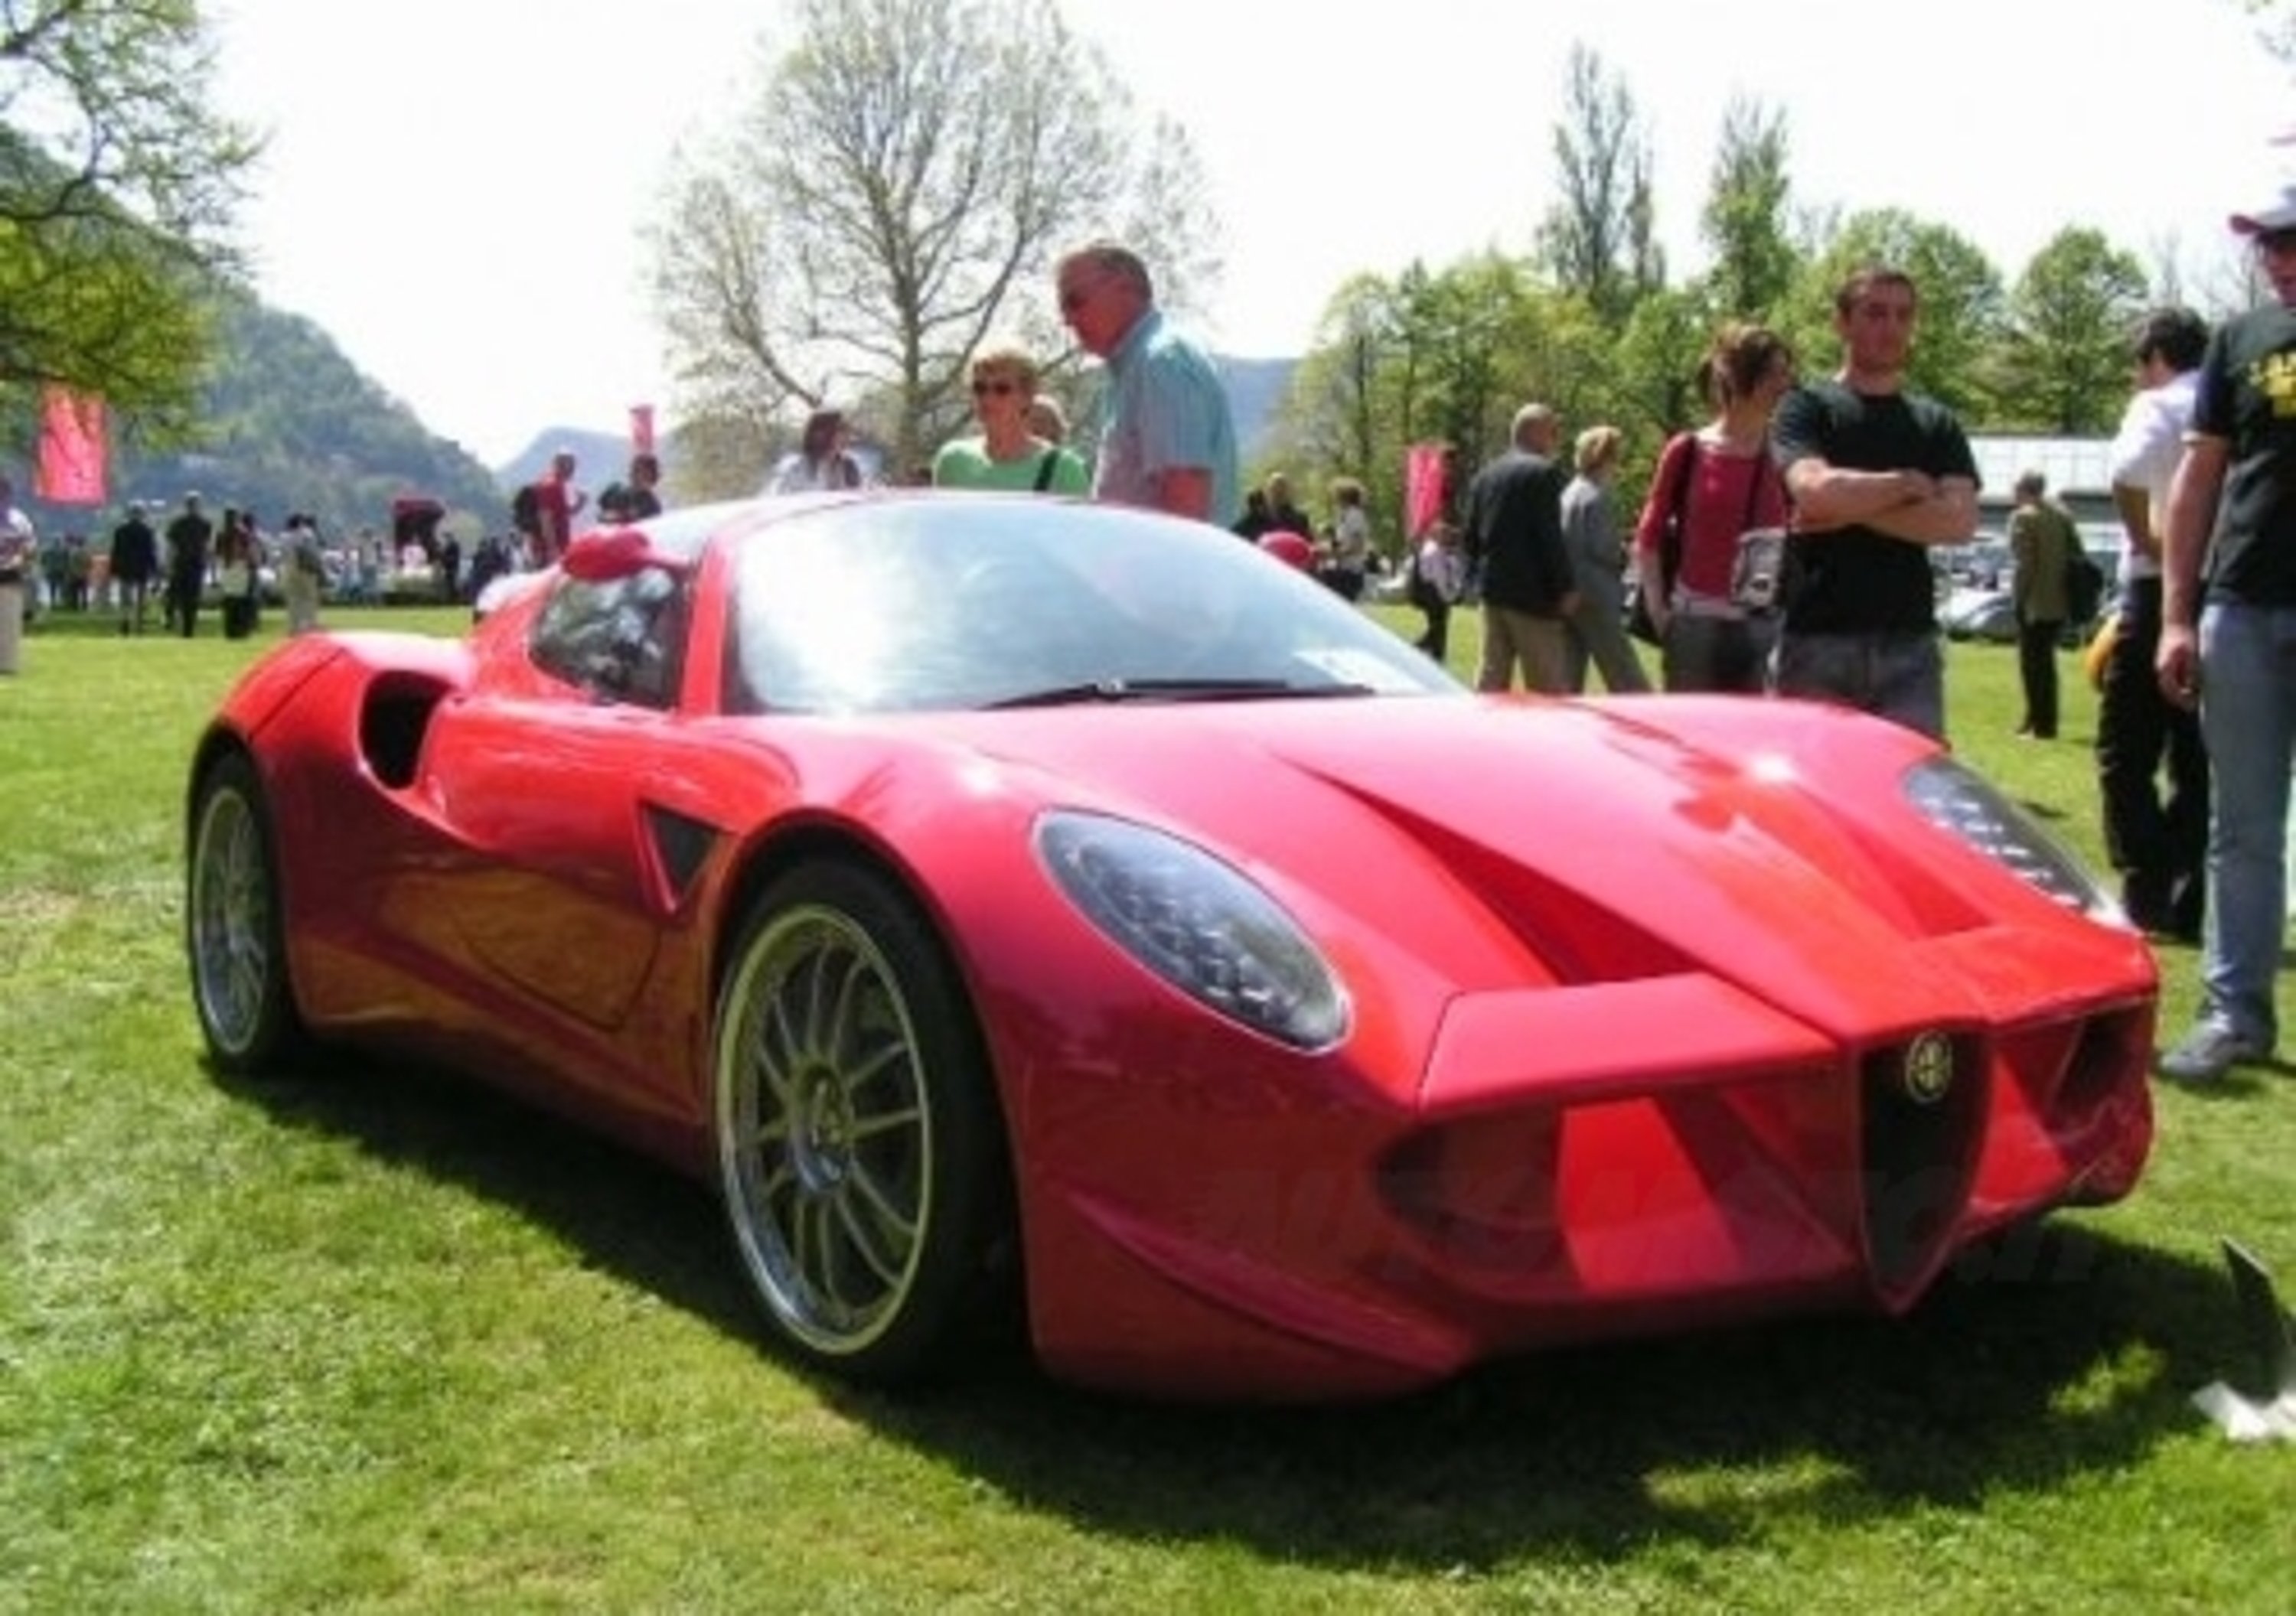 Alfa Romeo Diva